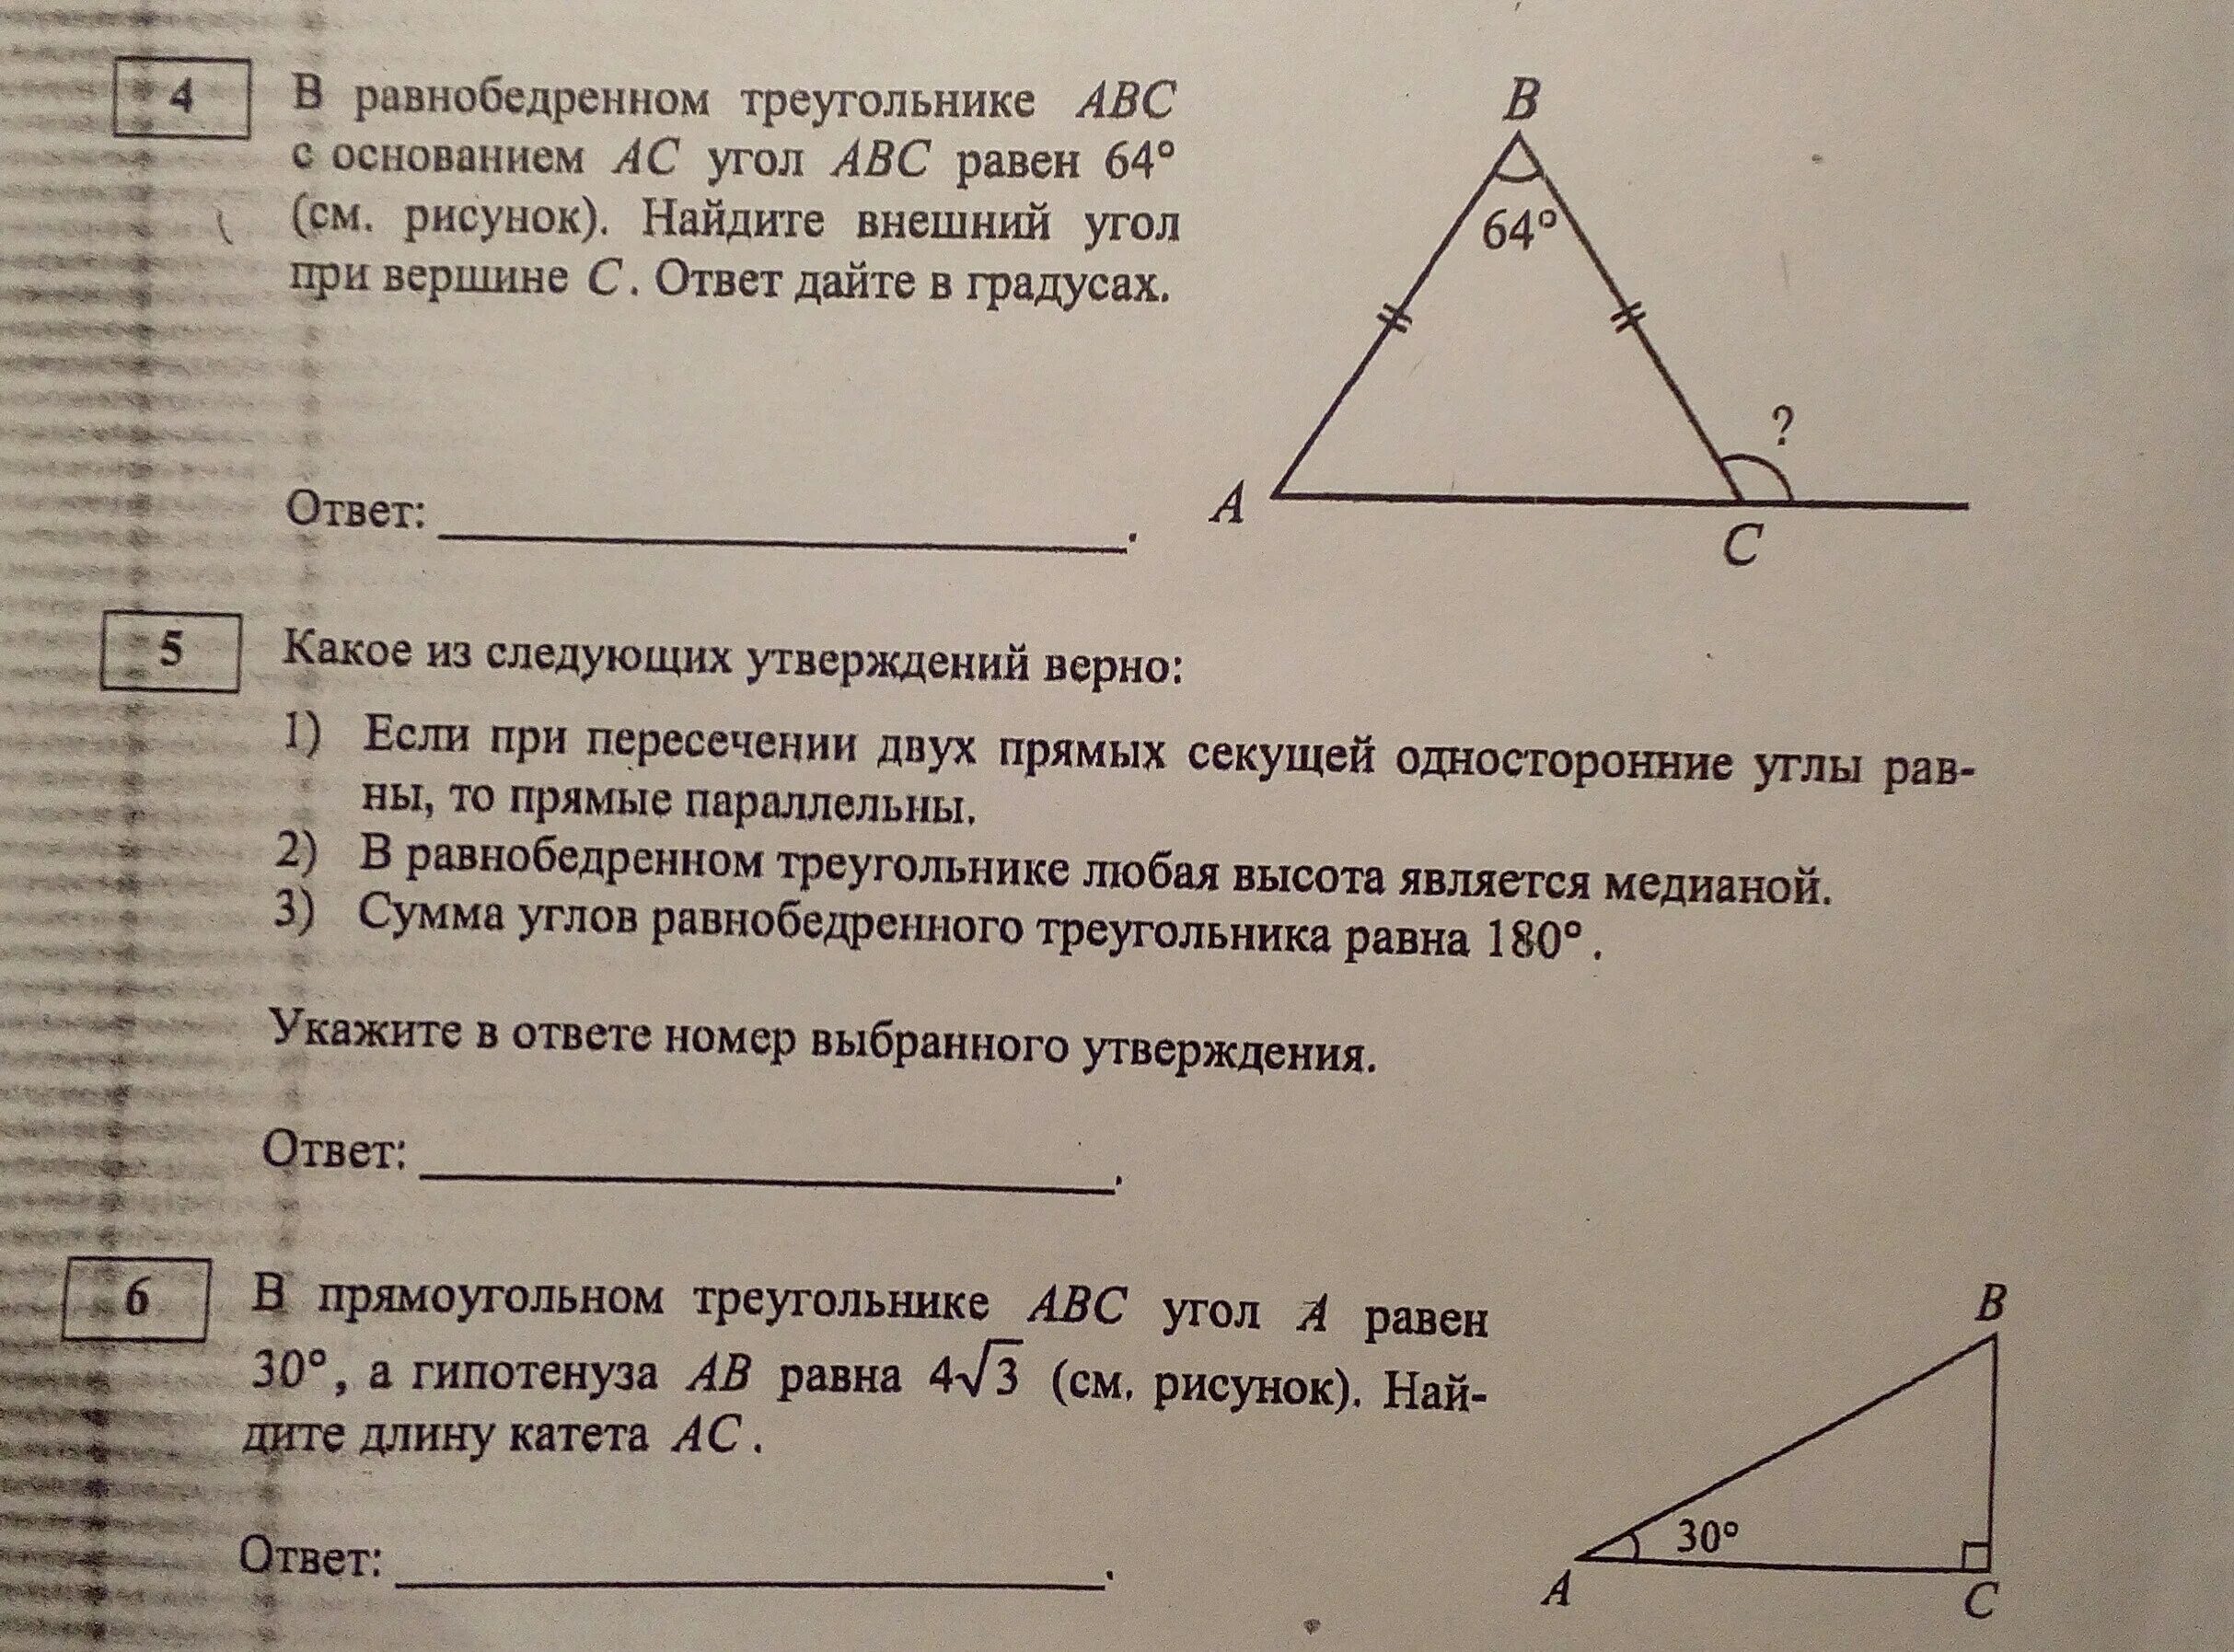 Треугольник абс угол б 80. Внешний угол при вершине в треугольника АВС. Внешний угол при вершине b треугольника. Внешне угол при вершине равнобедренного треугольника. Углы равнобедренного треугольника.